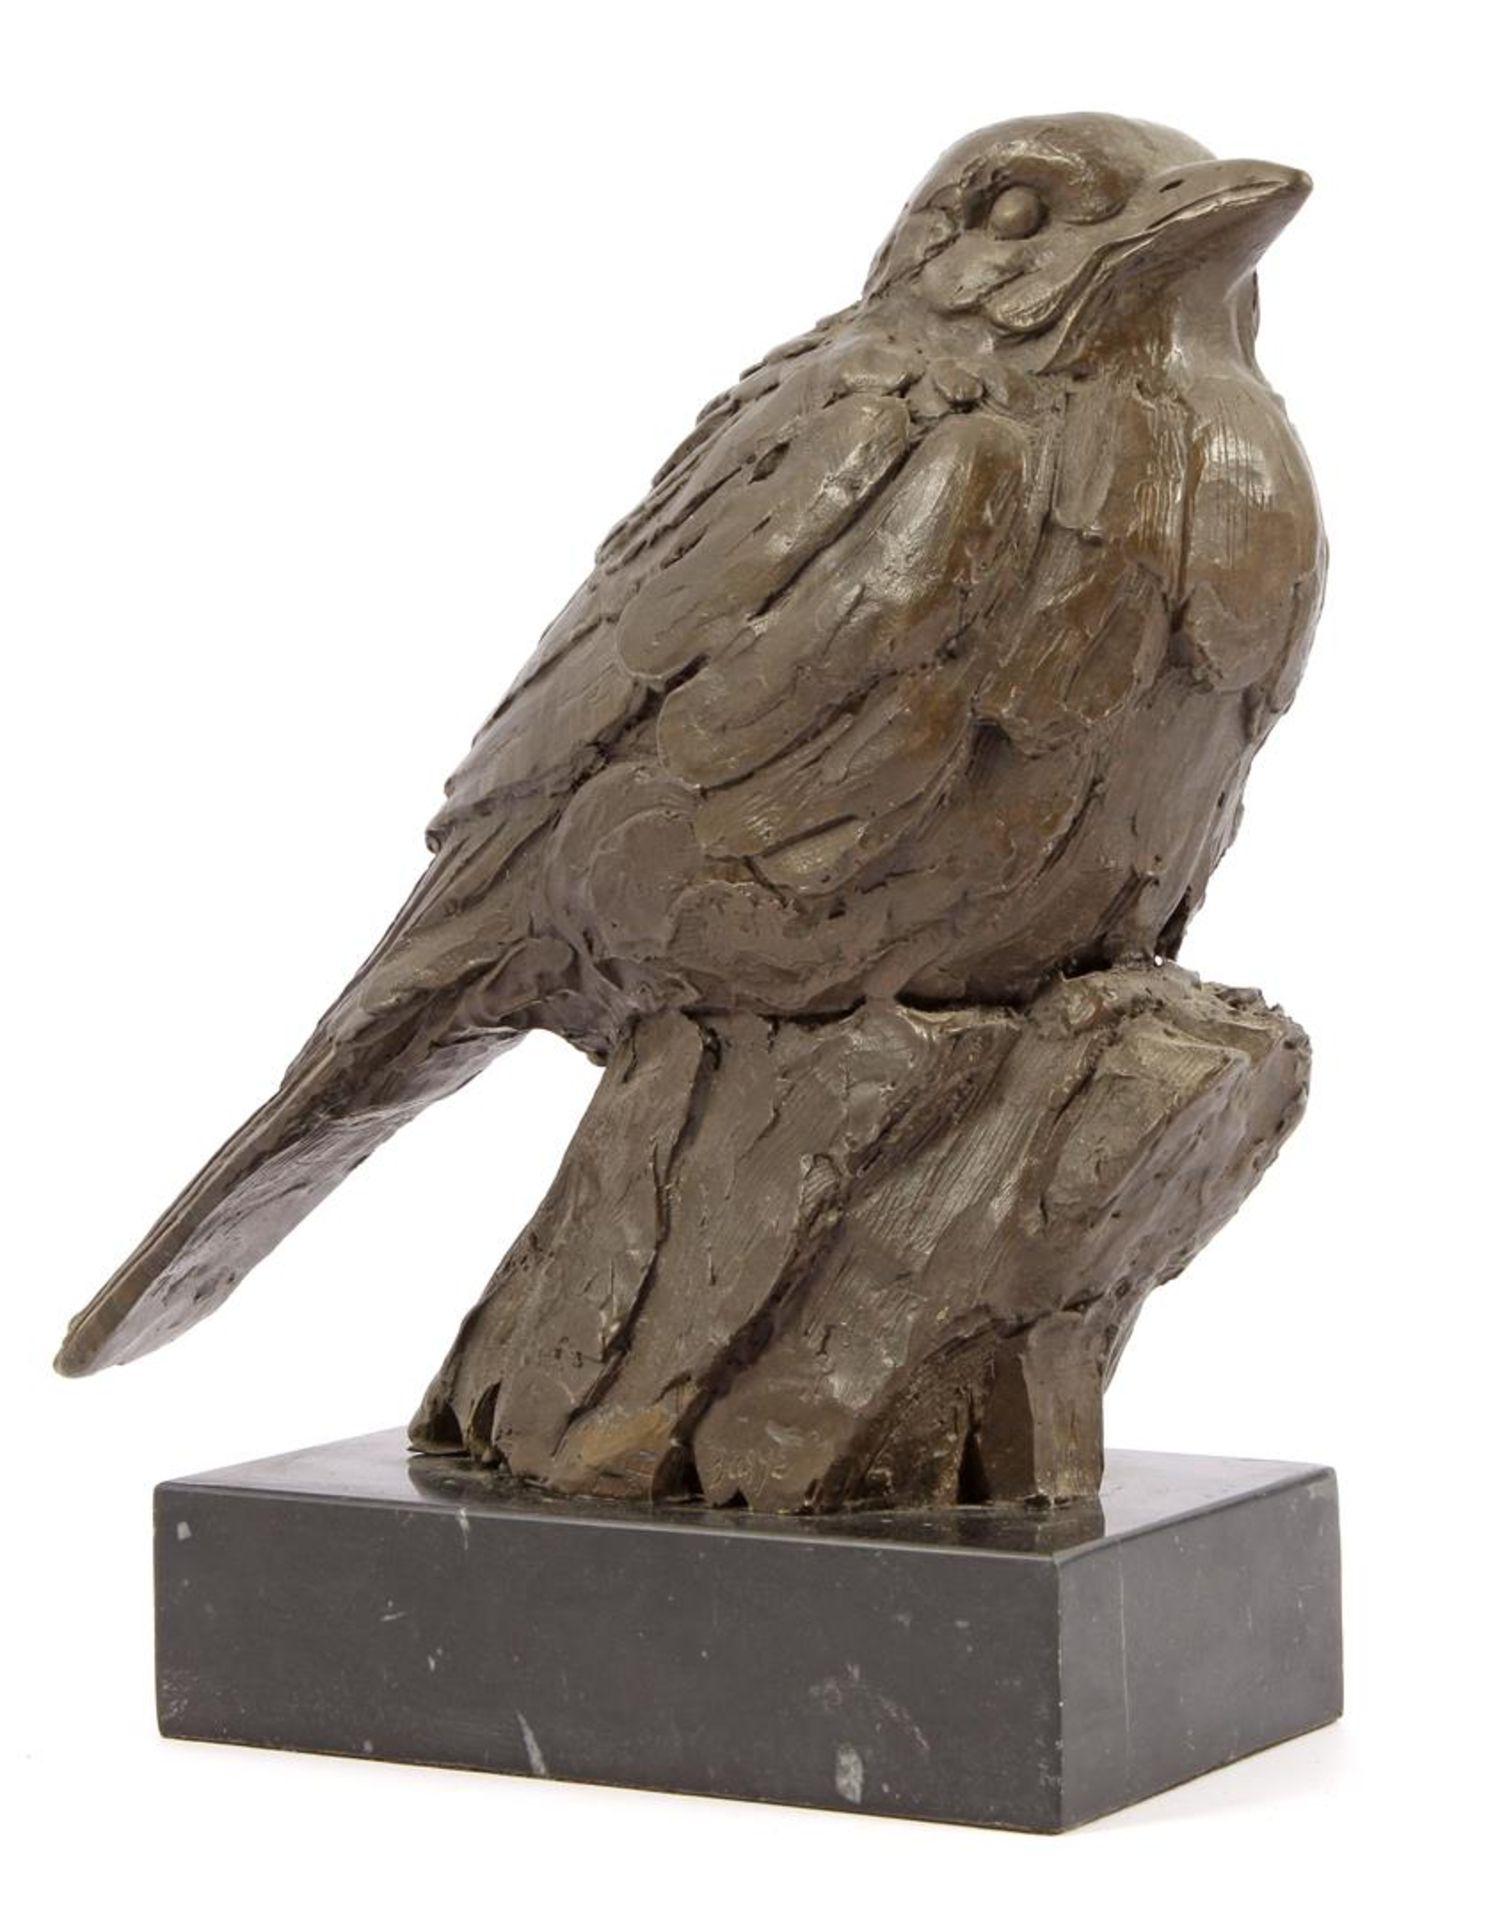 Bronze sculpture of a bird, on a stone base, 25 cm high